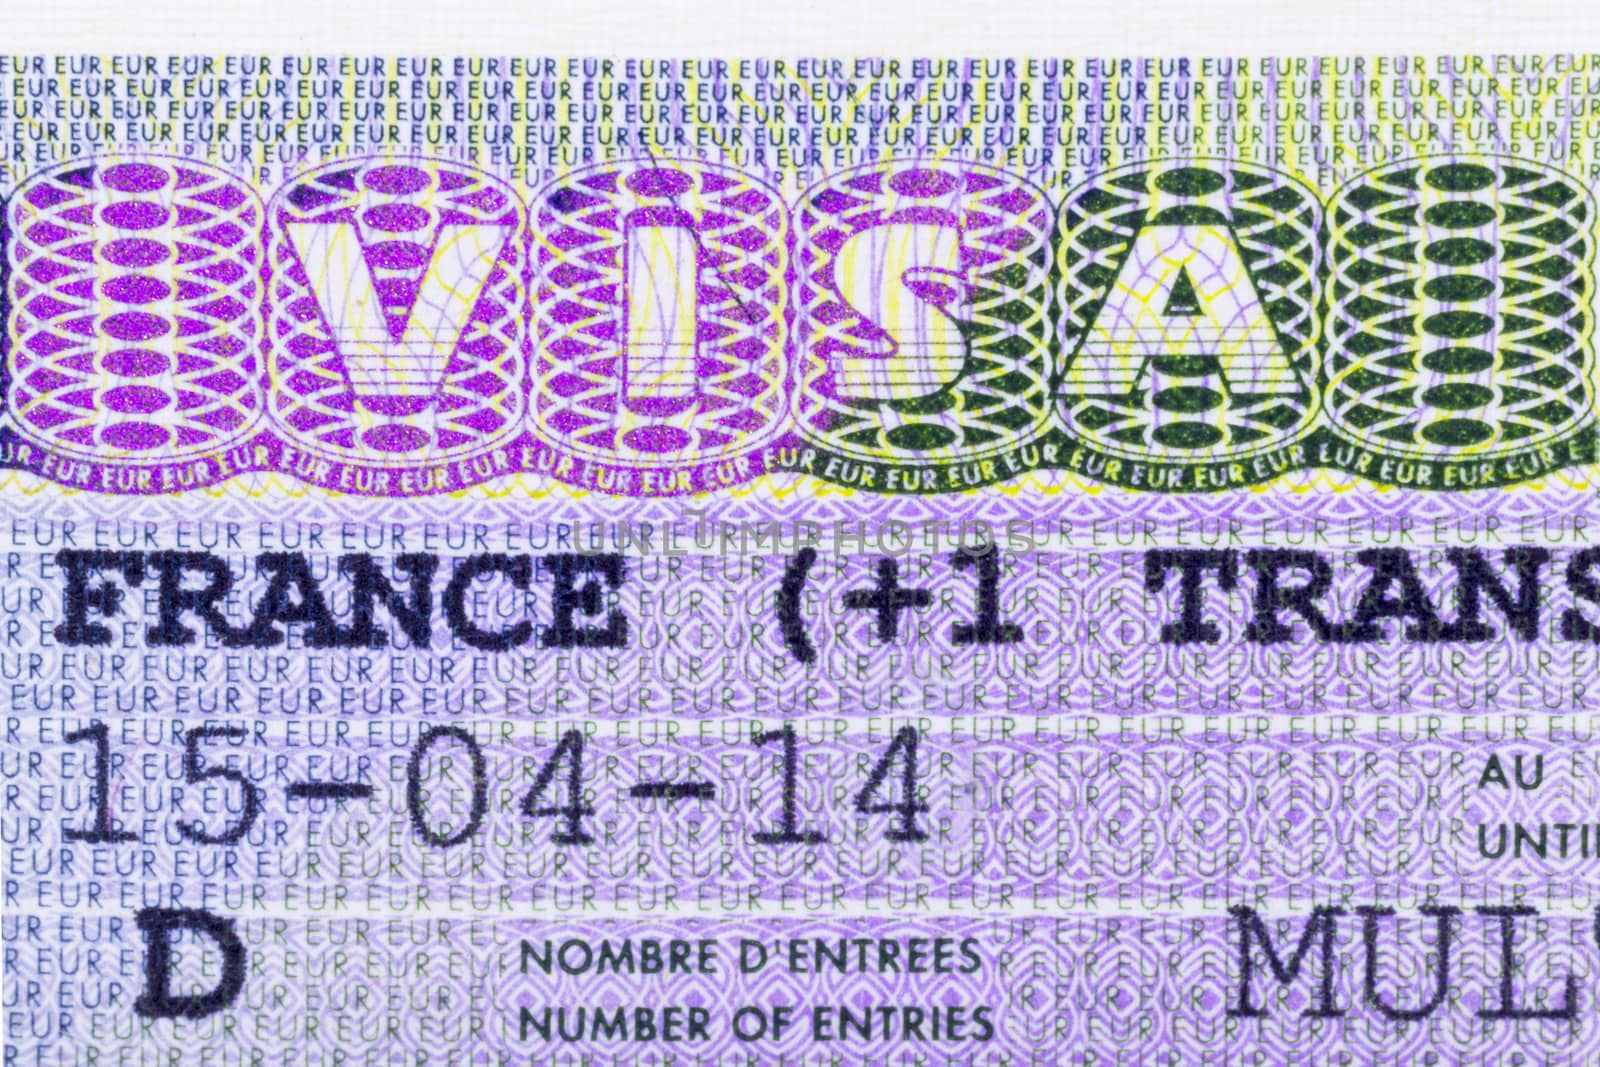 Close up of a Schengen visa allowing the passport holder to travel inside the Schengen treaty territory